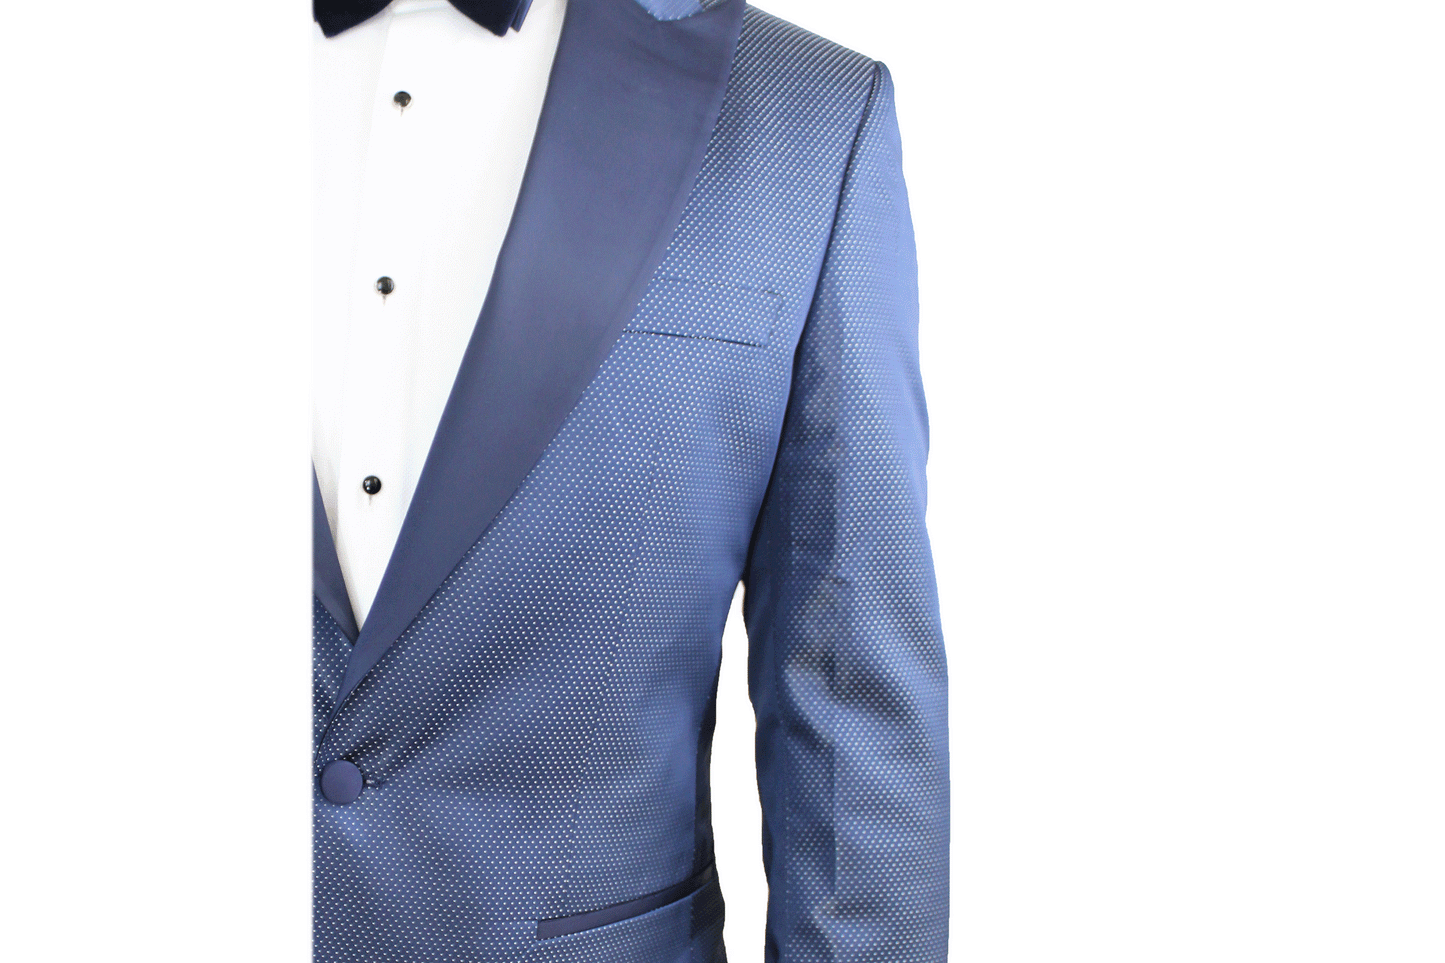 Berragamo Metallic Blue Tuxedo